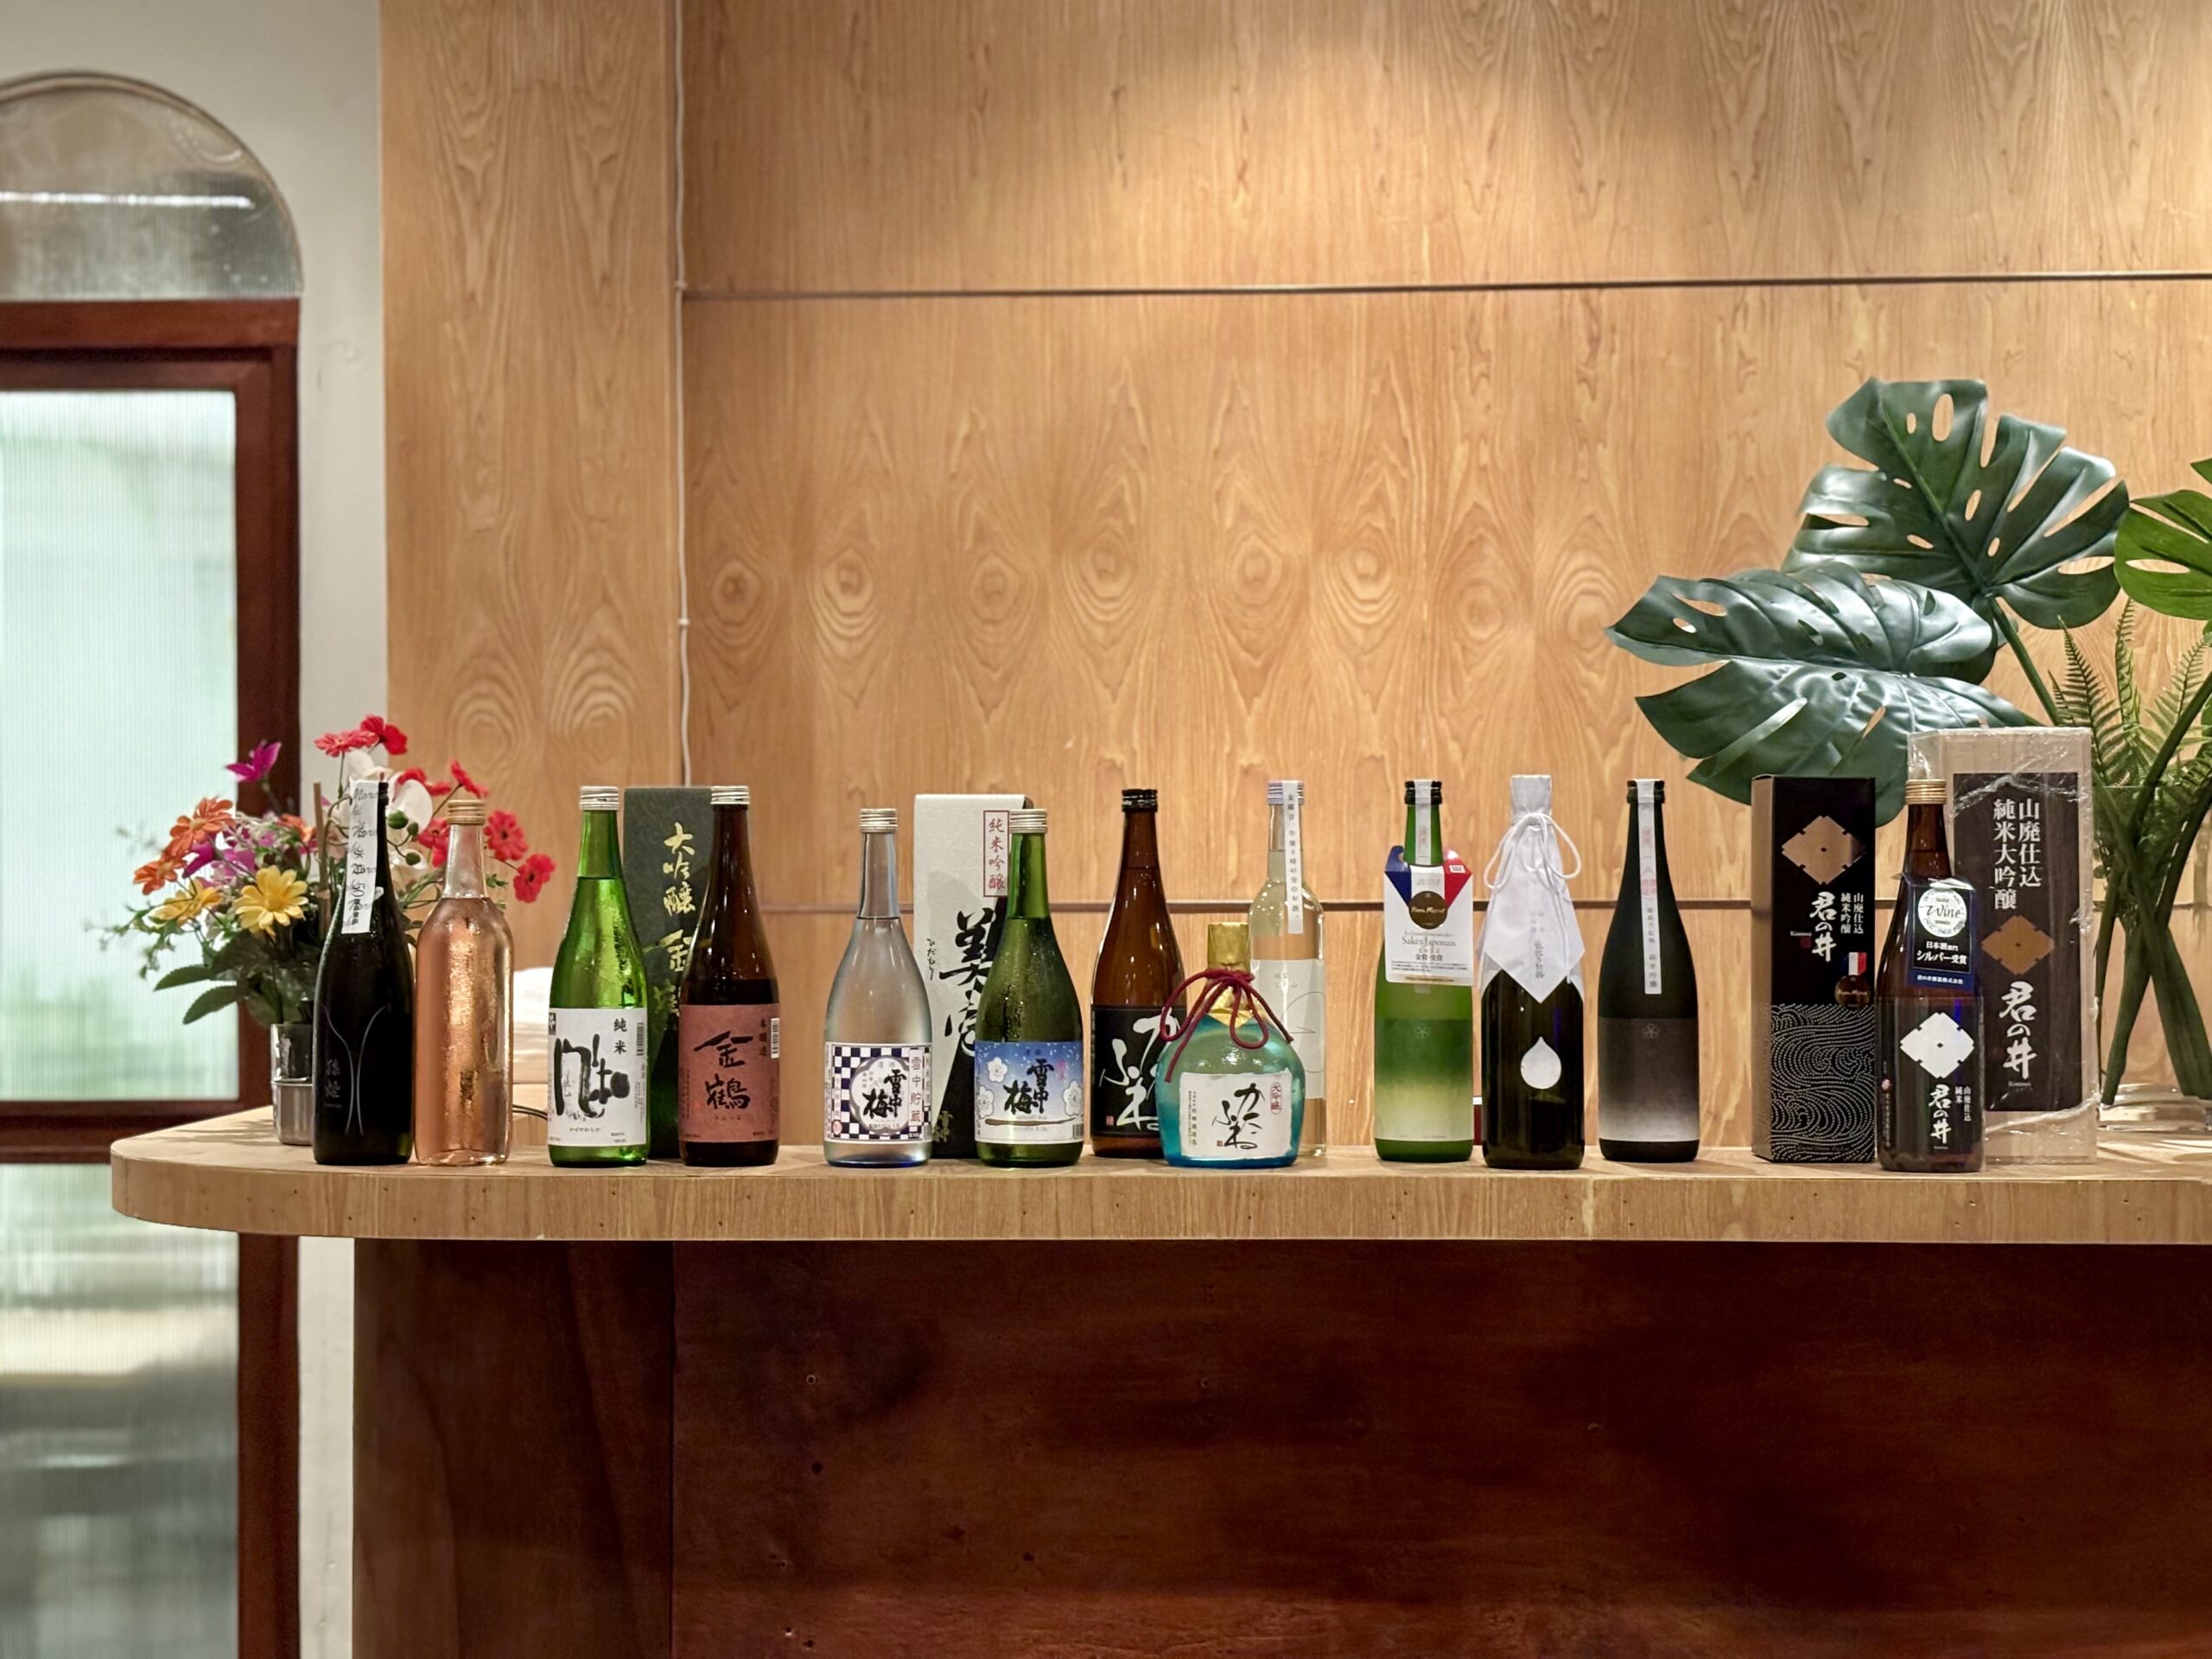 品酒会一共呈现来自新潟的17瓶清酒。（摄影：叶蓬玲）